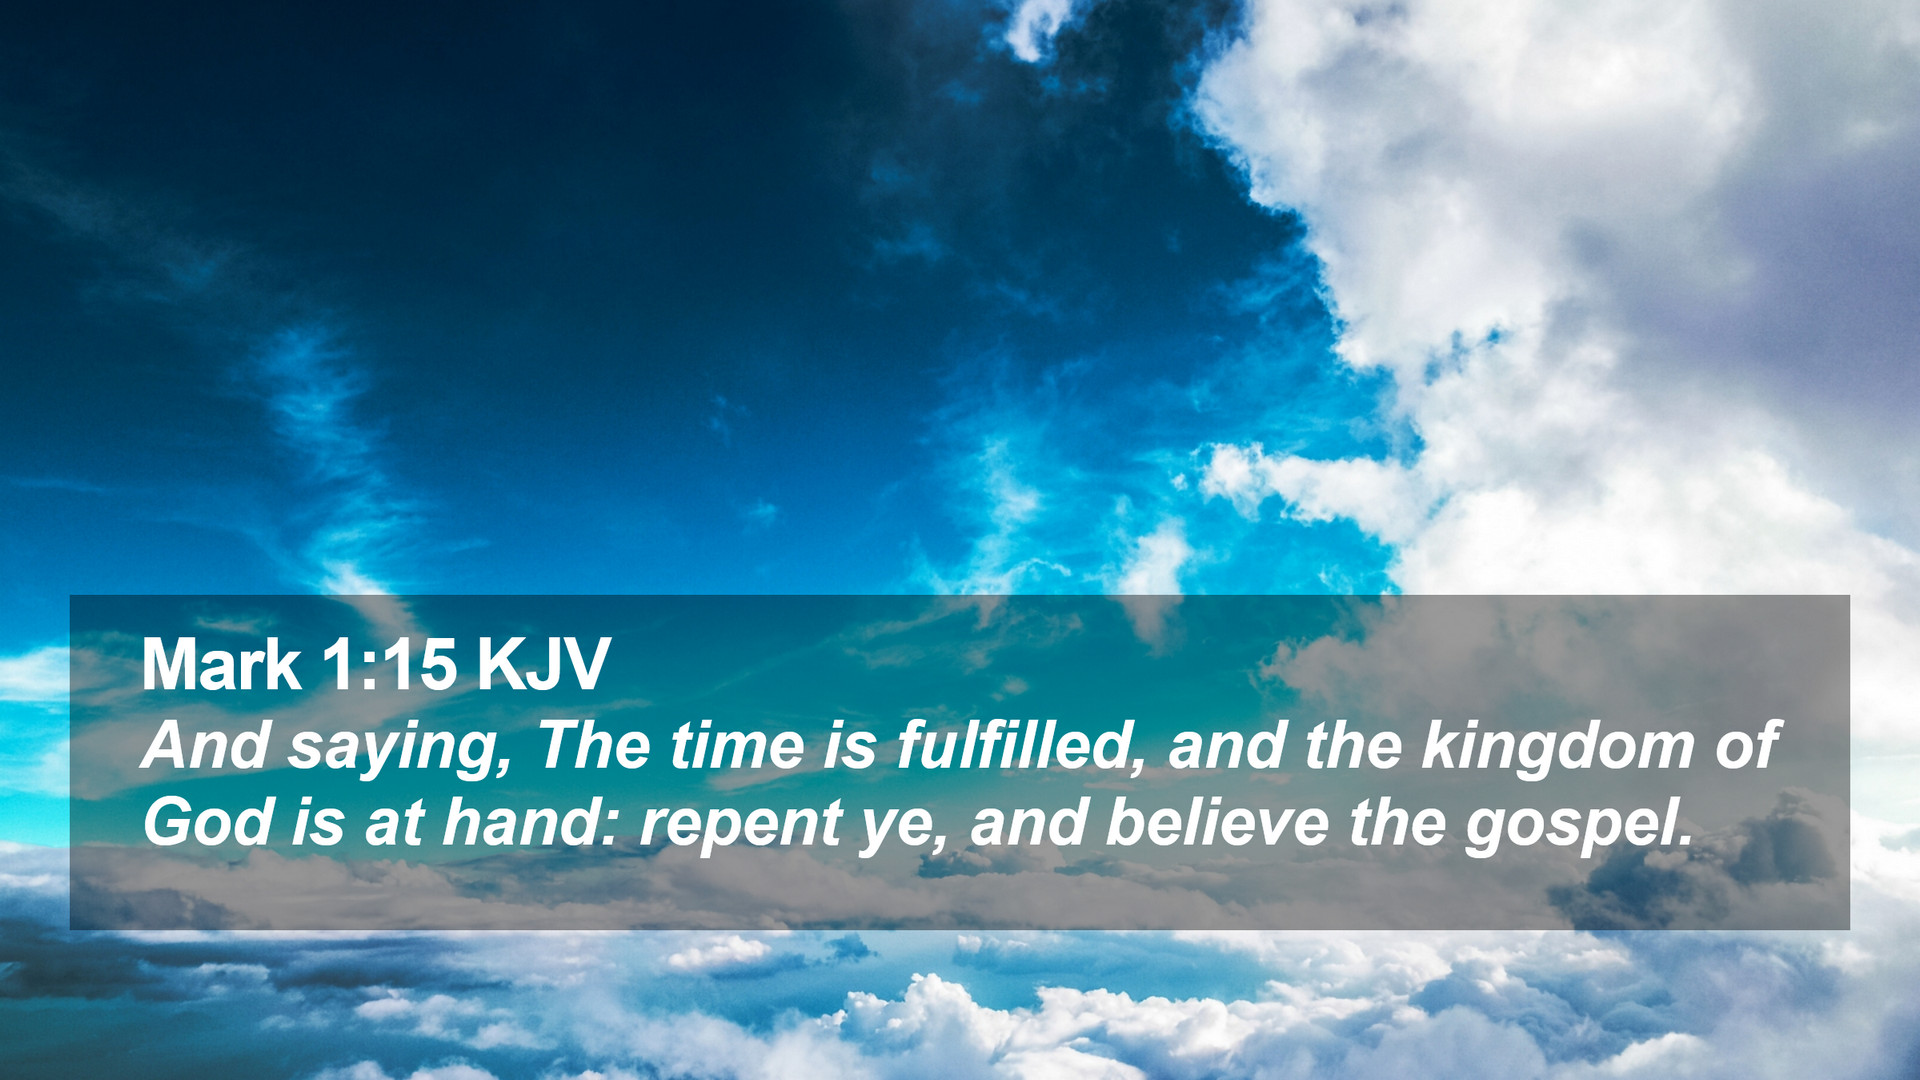 Mark 1:15 KJV Desktop Wallpaper saying, The time is fulfilled